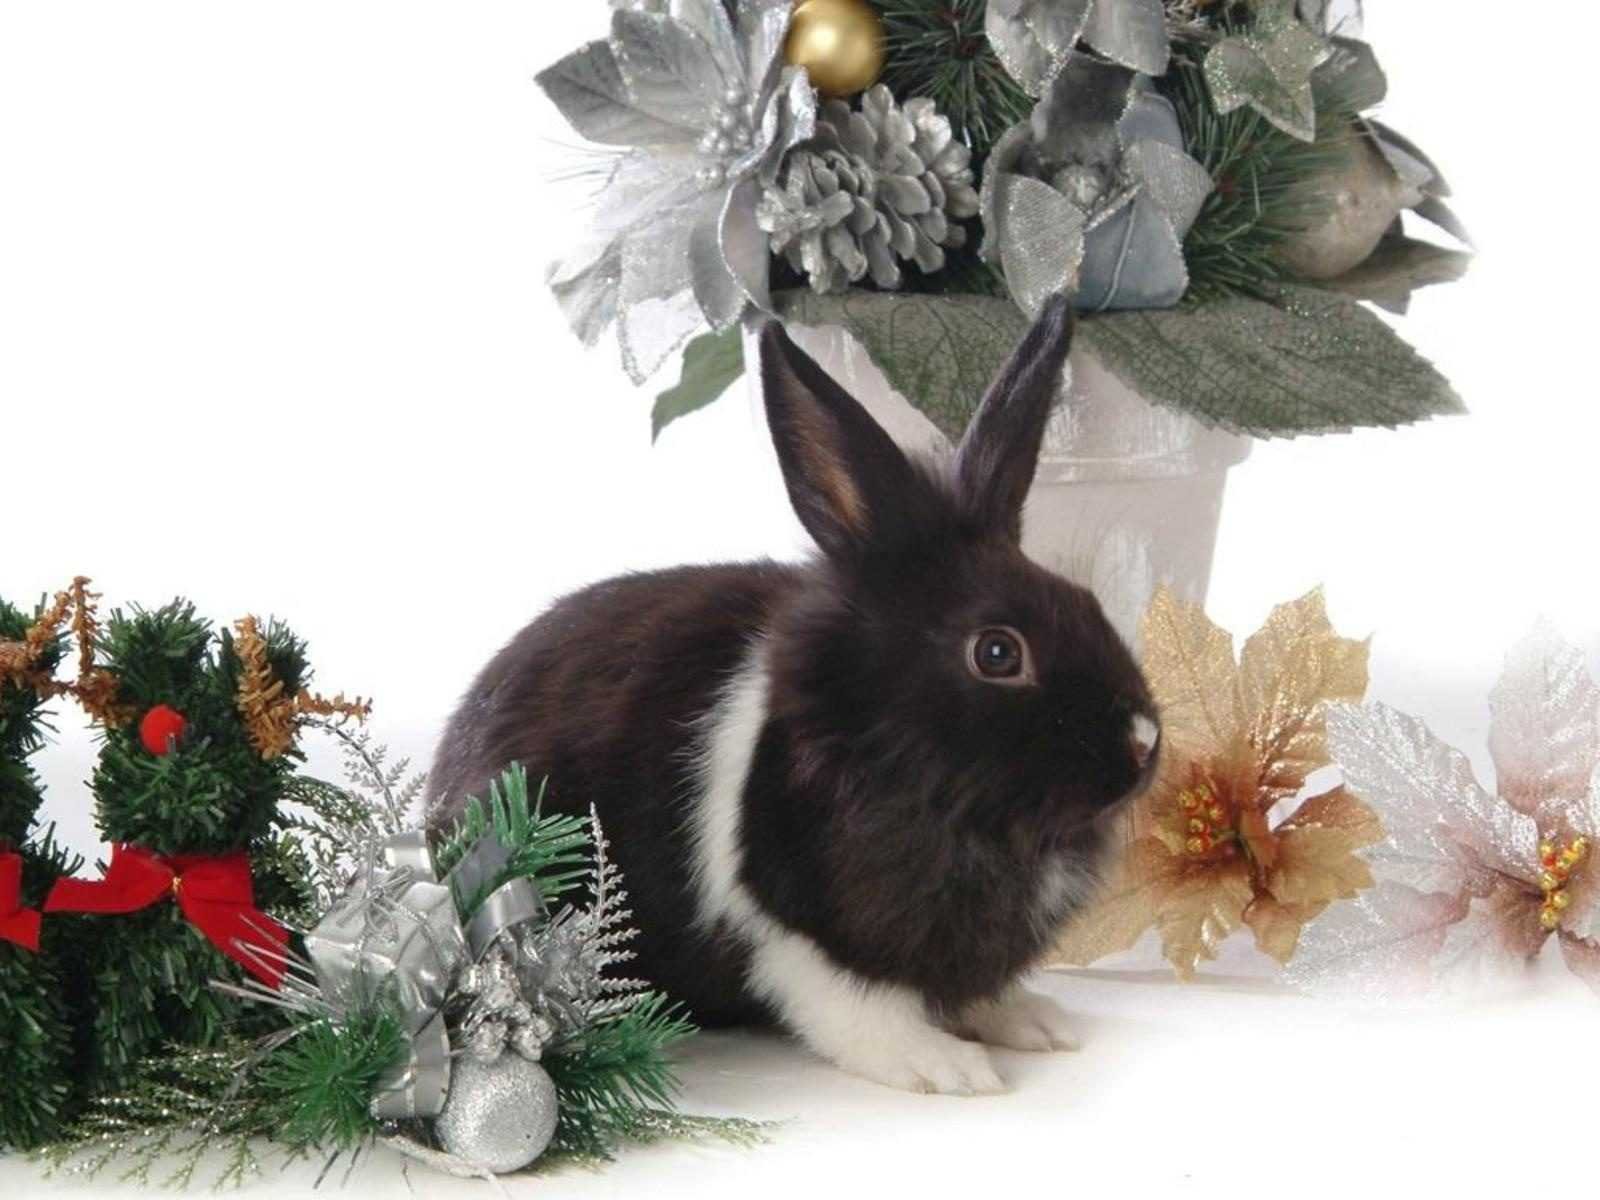 Новым годом год кролика